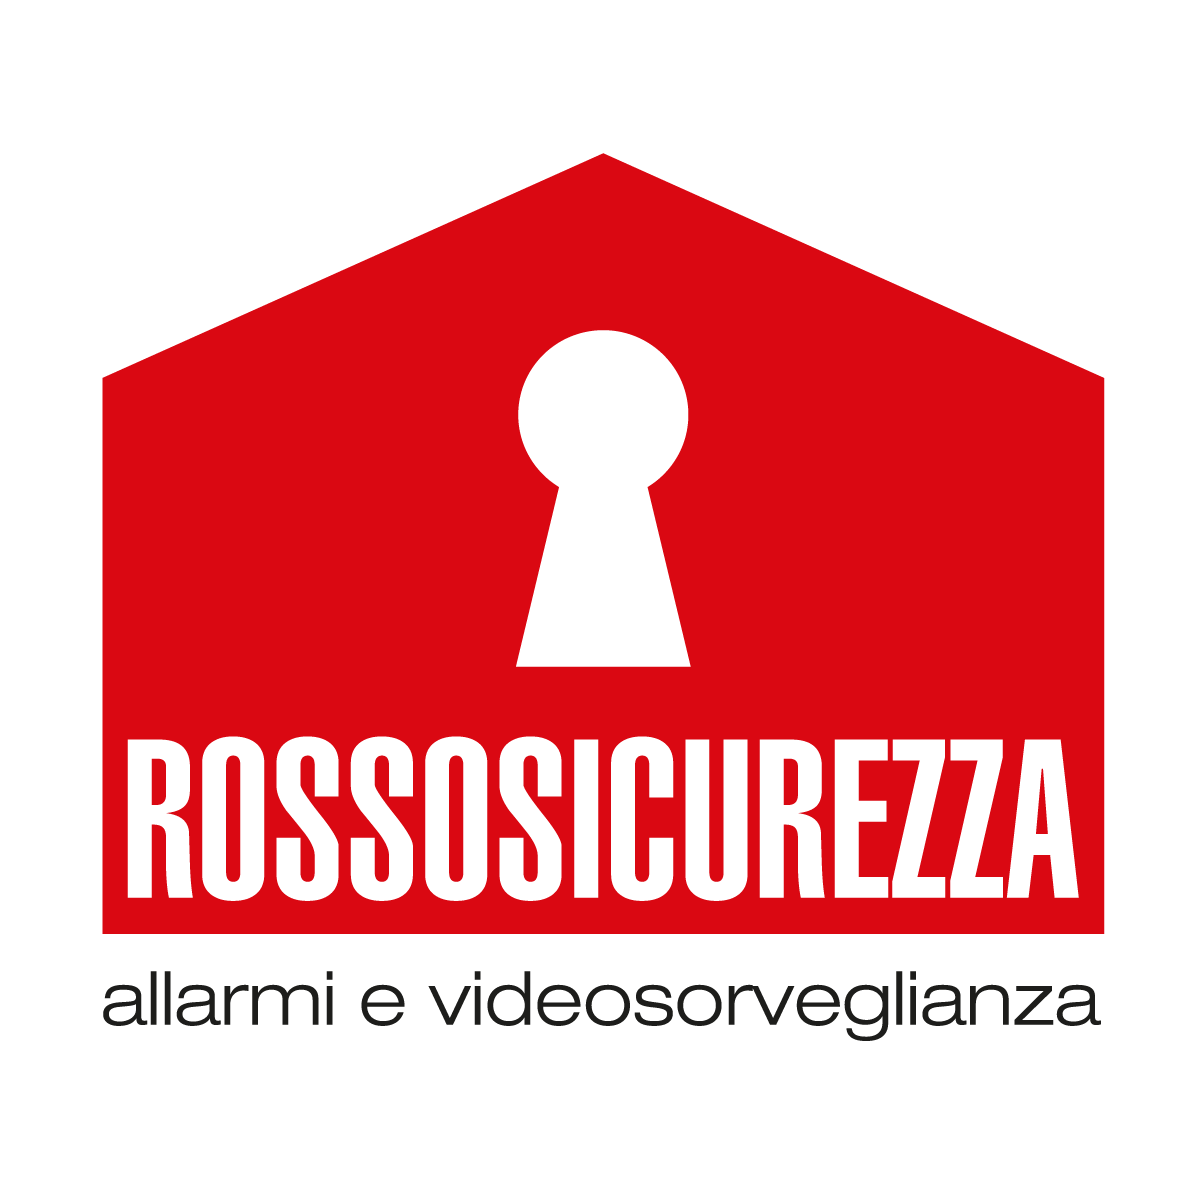 Rossosicurezza, Logo